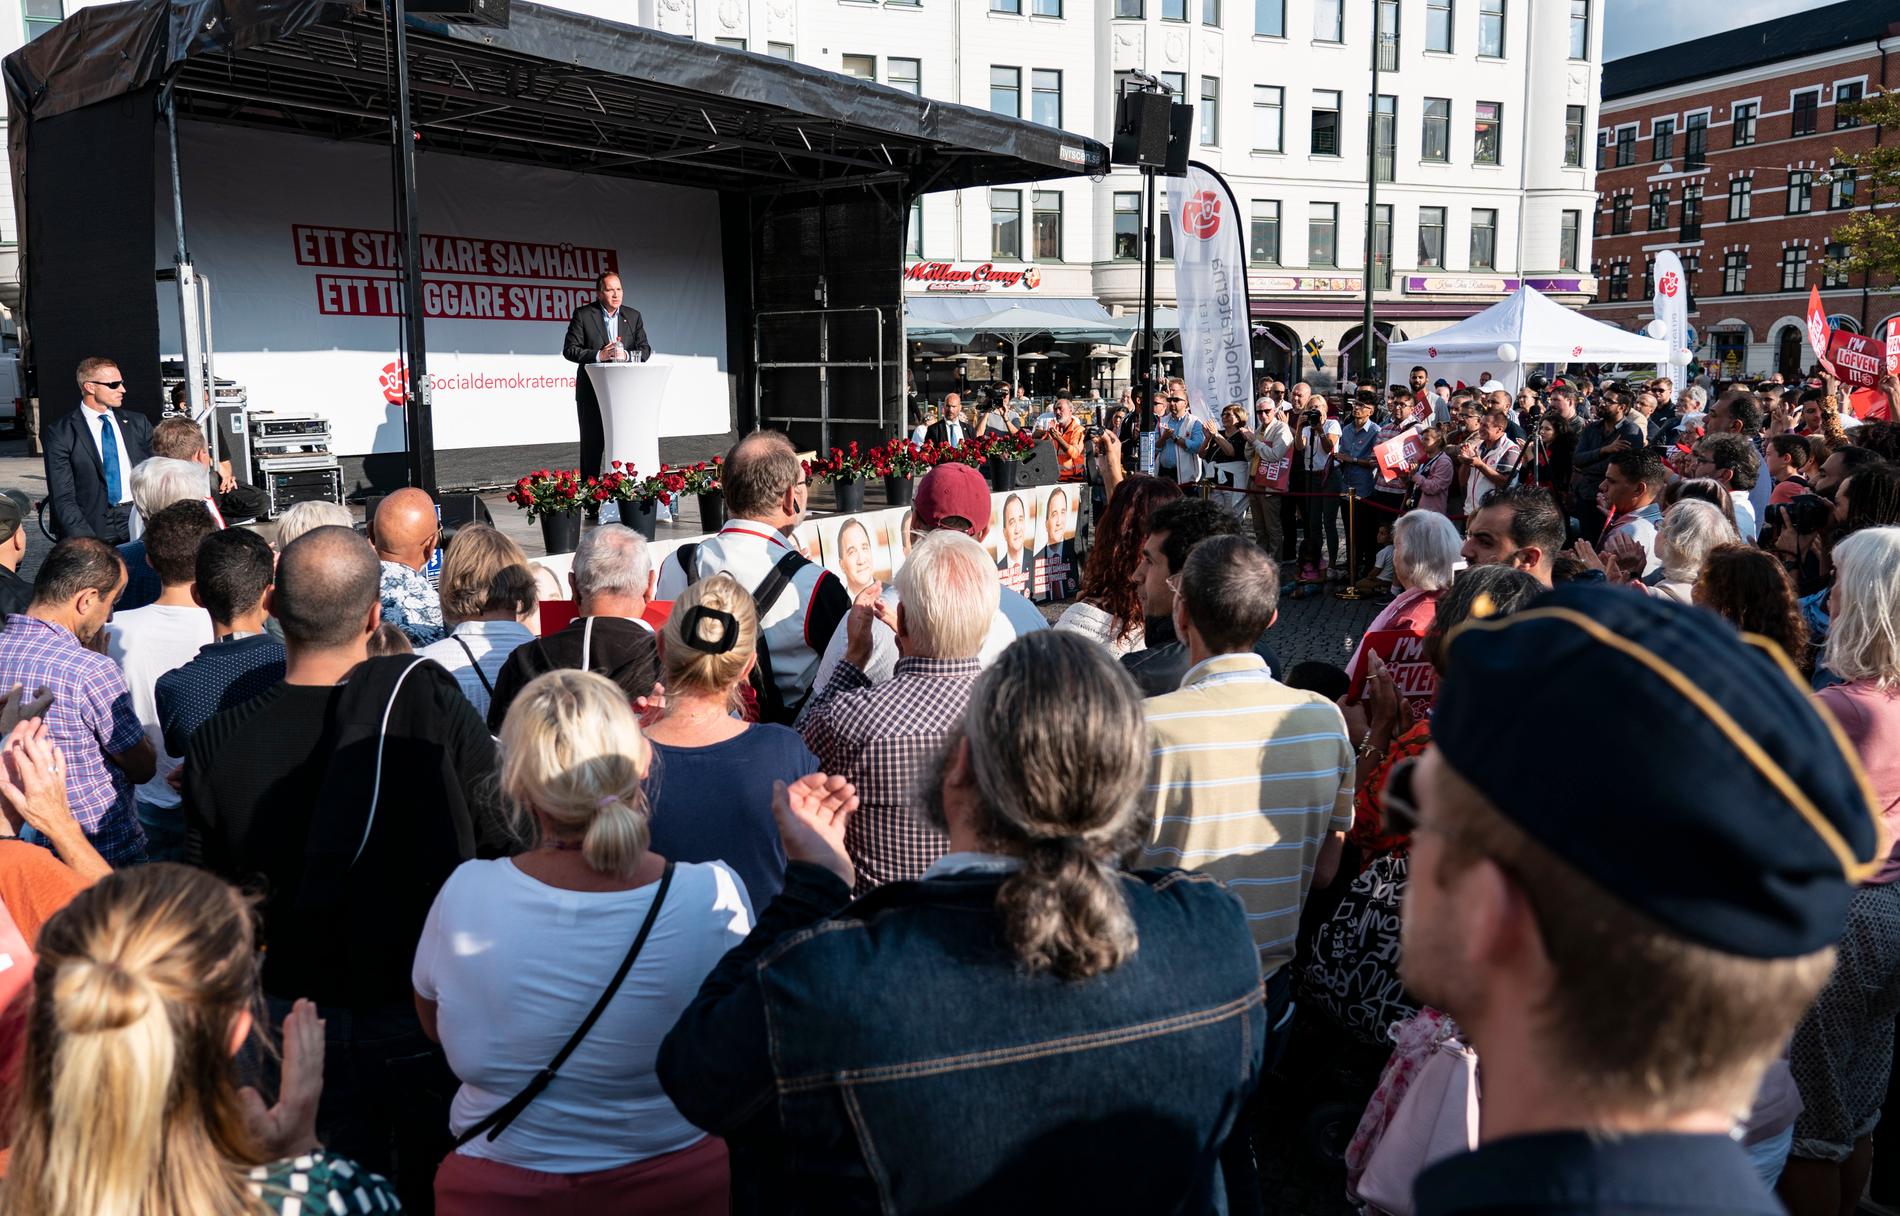  När statsminister Stefan Löfven talade på Möllevångstorget den 4 september förra året fanns inte högtalarna på plats ännu. 